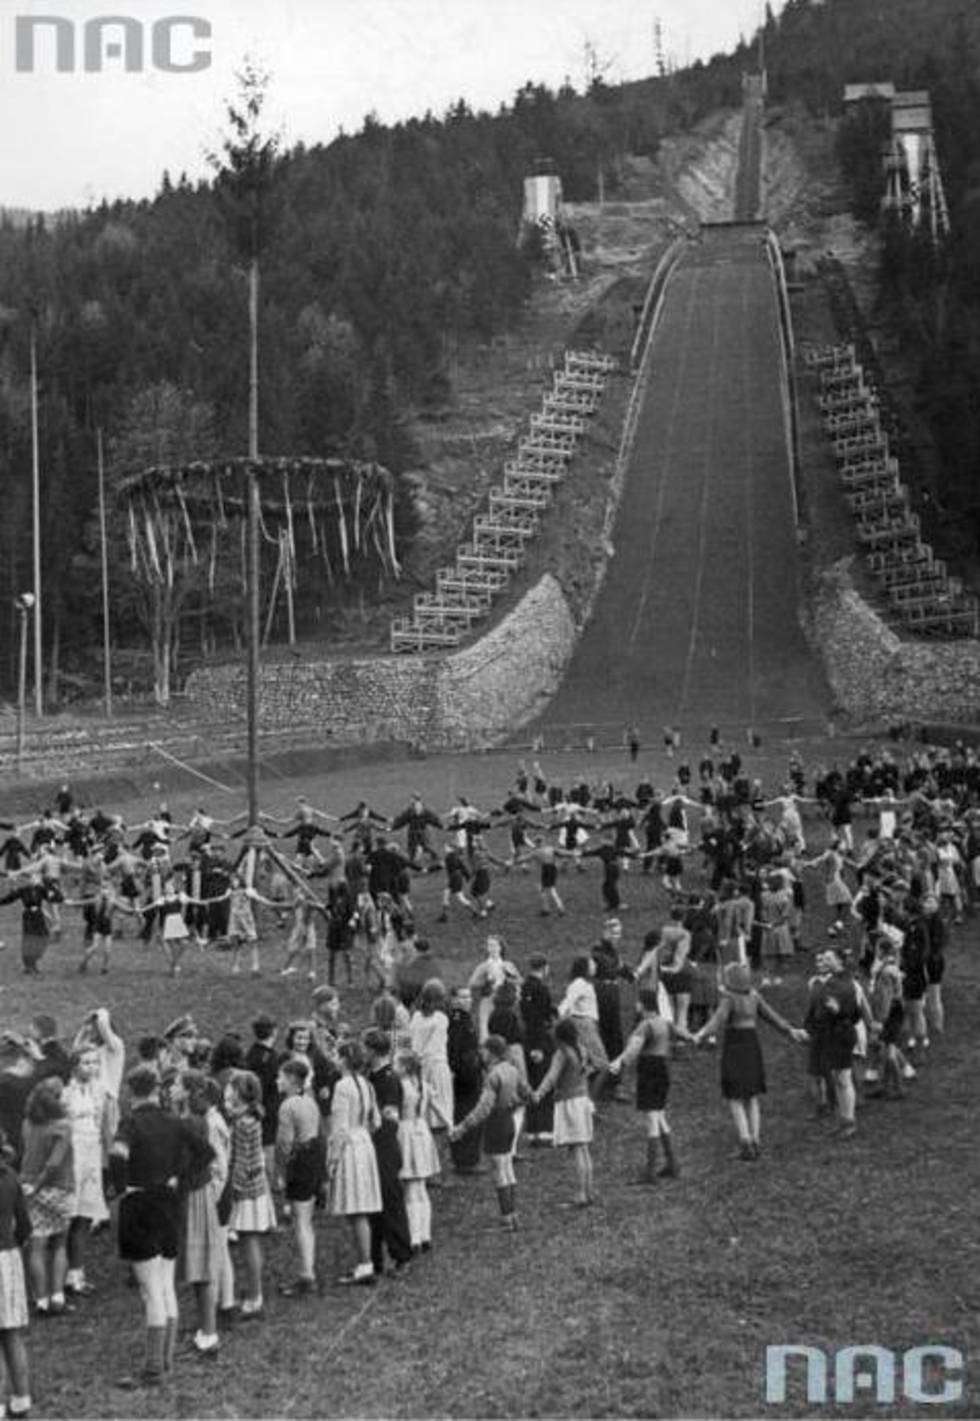  Obchody święta wiosny przez Hitlerjugend w Zakopanem. Widoczna młodzież z Hitlerjugend tańcząca pod Wielką Krokwią w maju 1944 roku.
